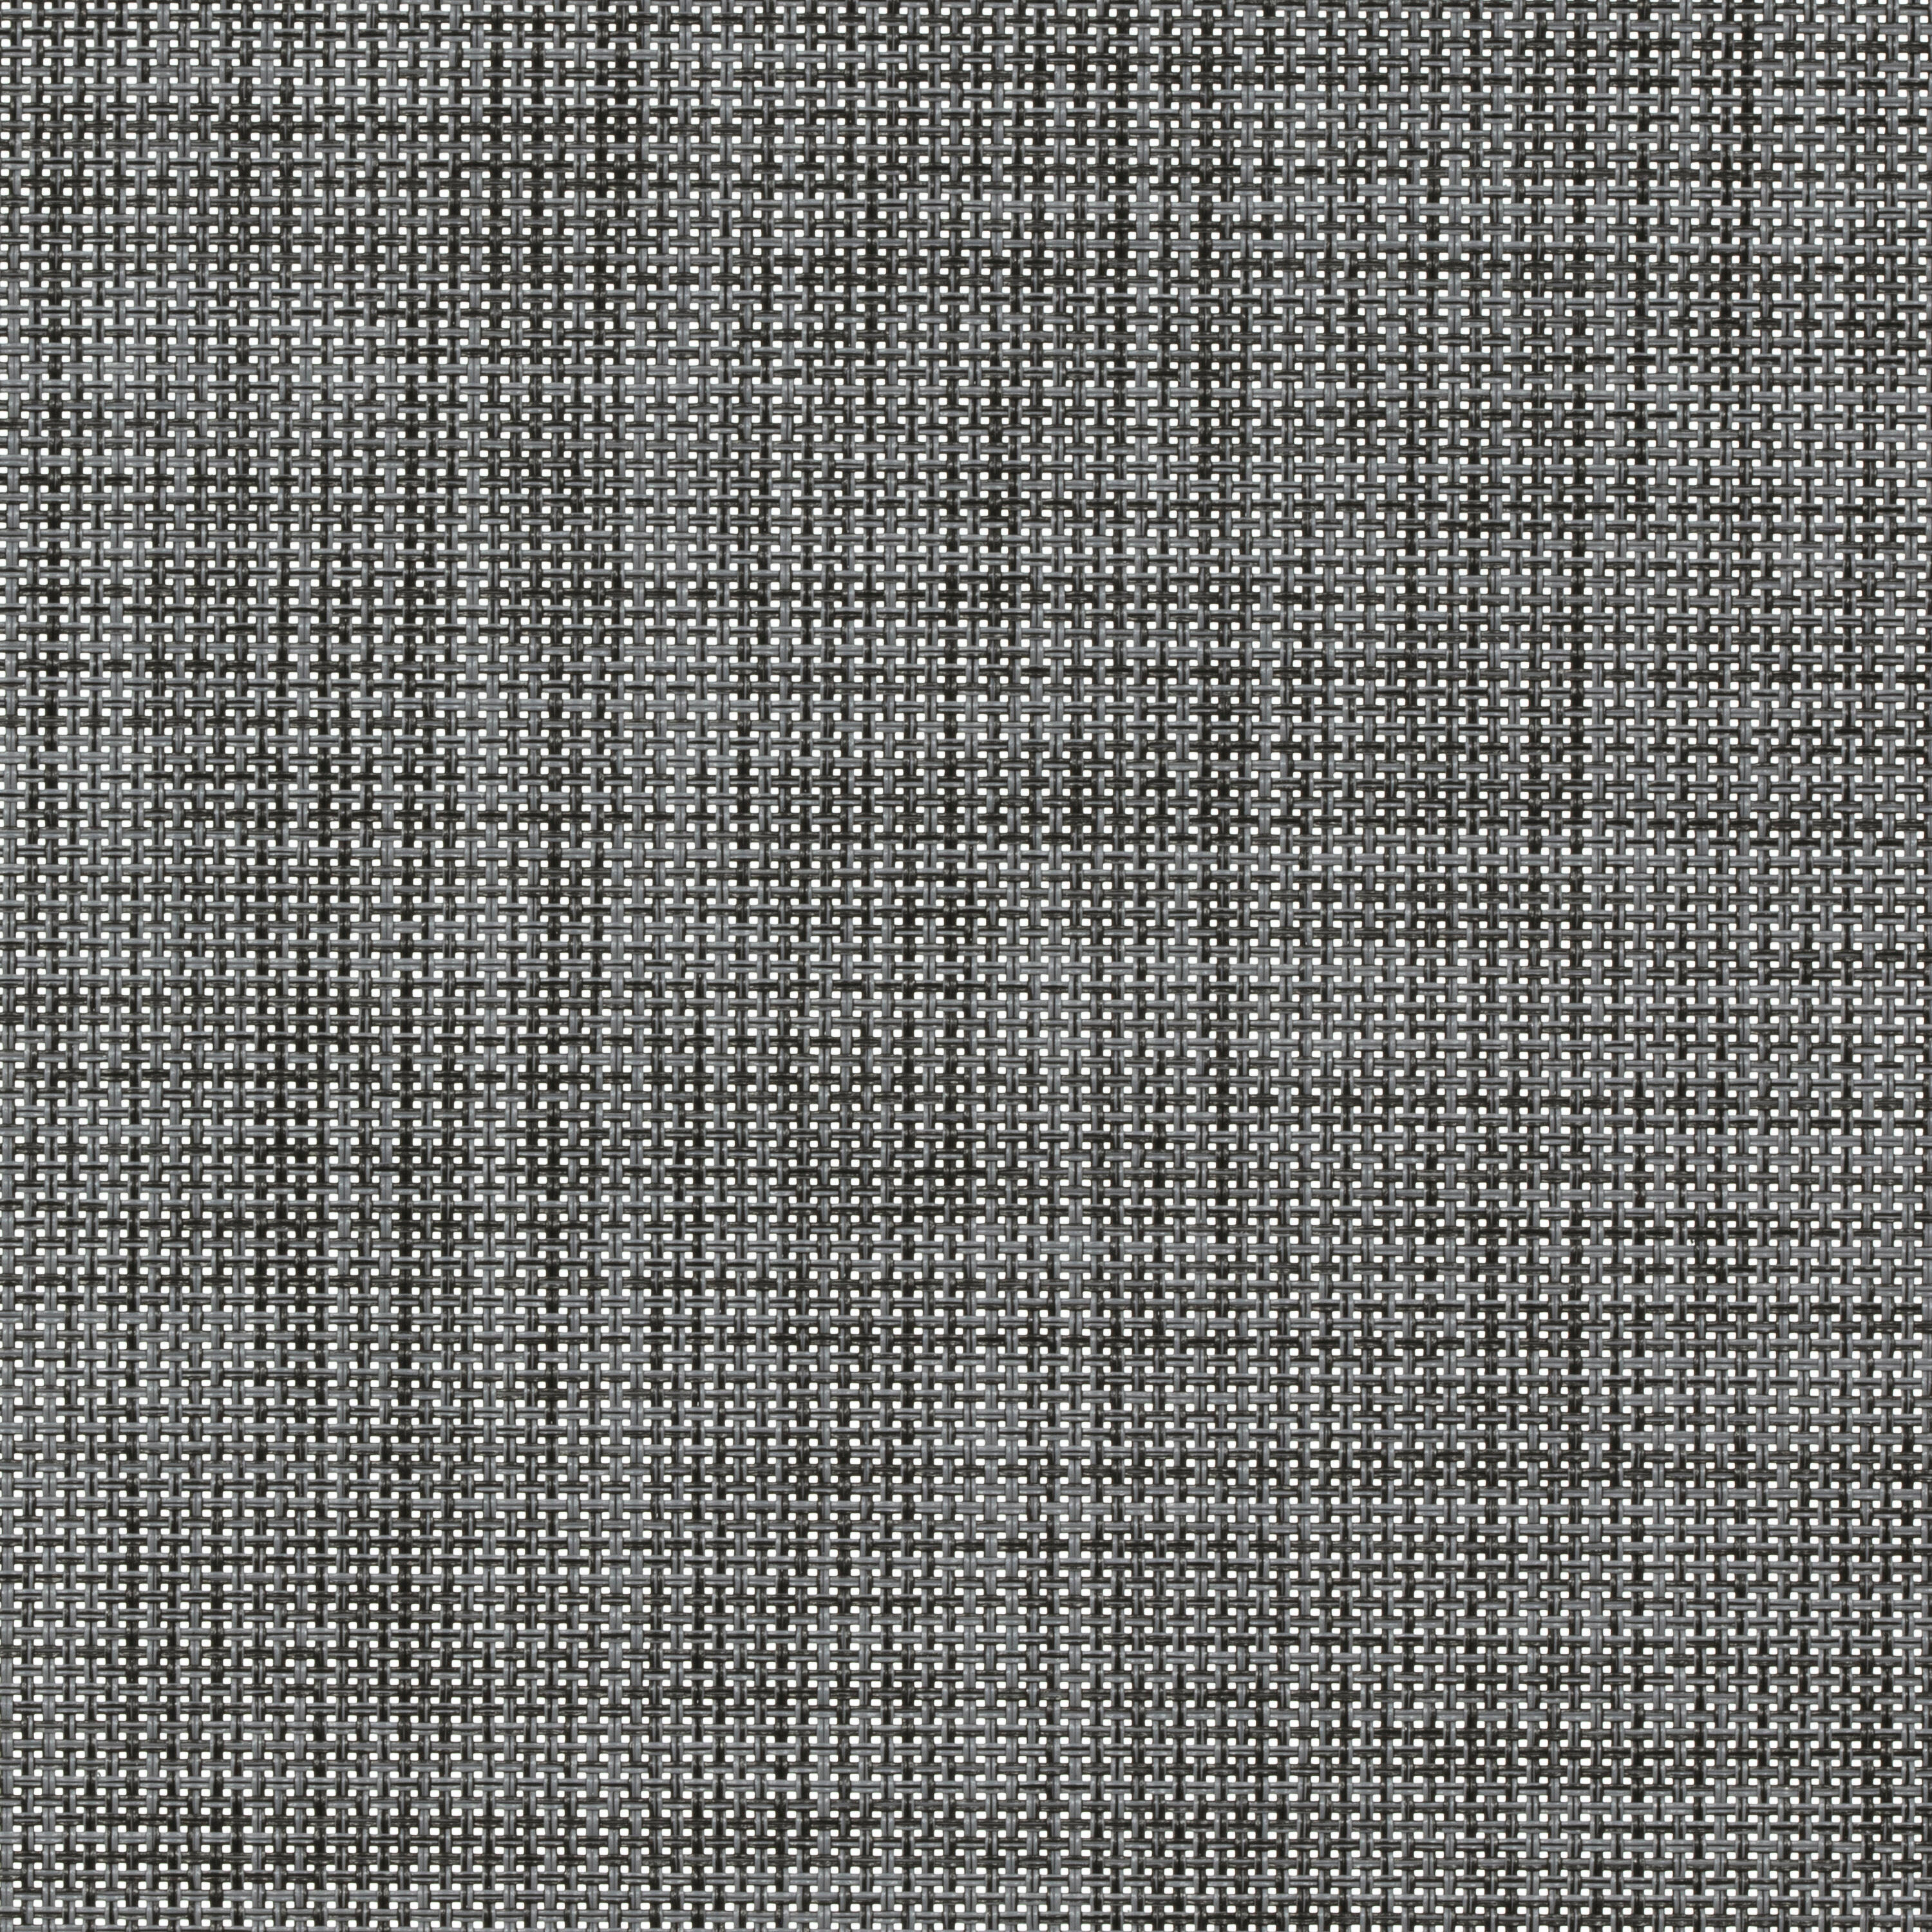 Tessuto per tende a rullo filtrante INSPIRE Puebla grigio / argento 85.8 x 250 cm - 2